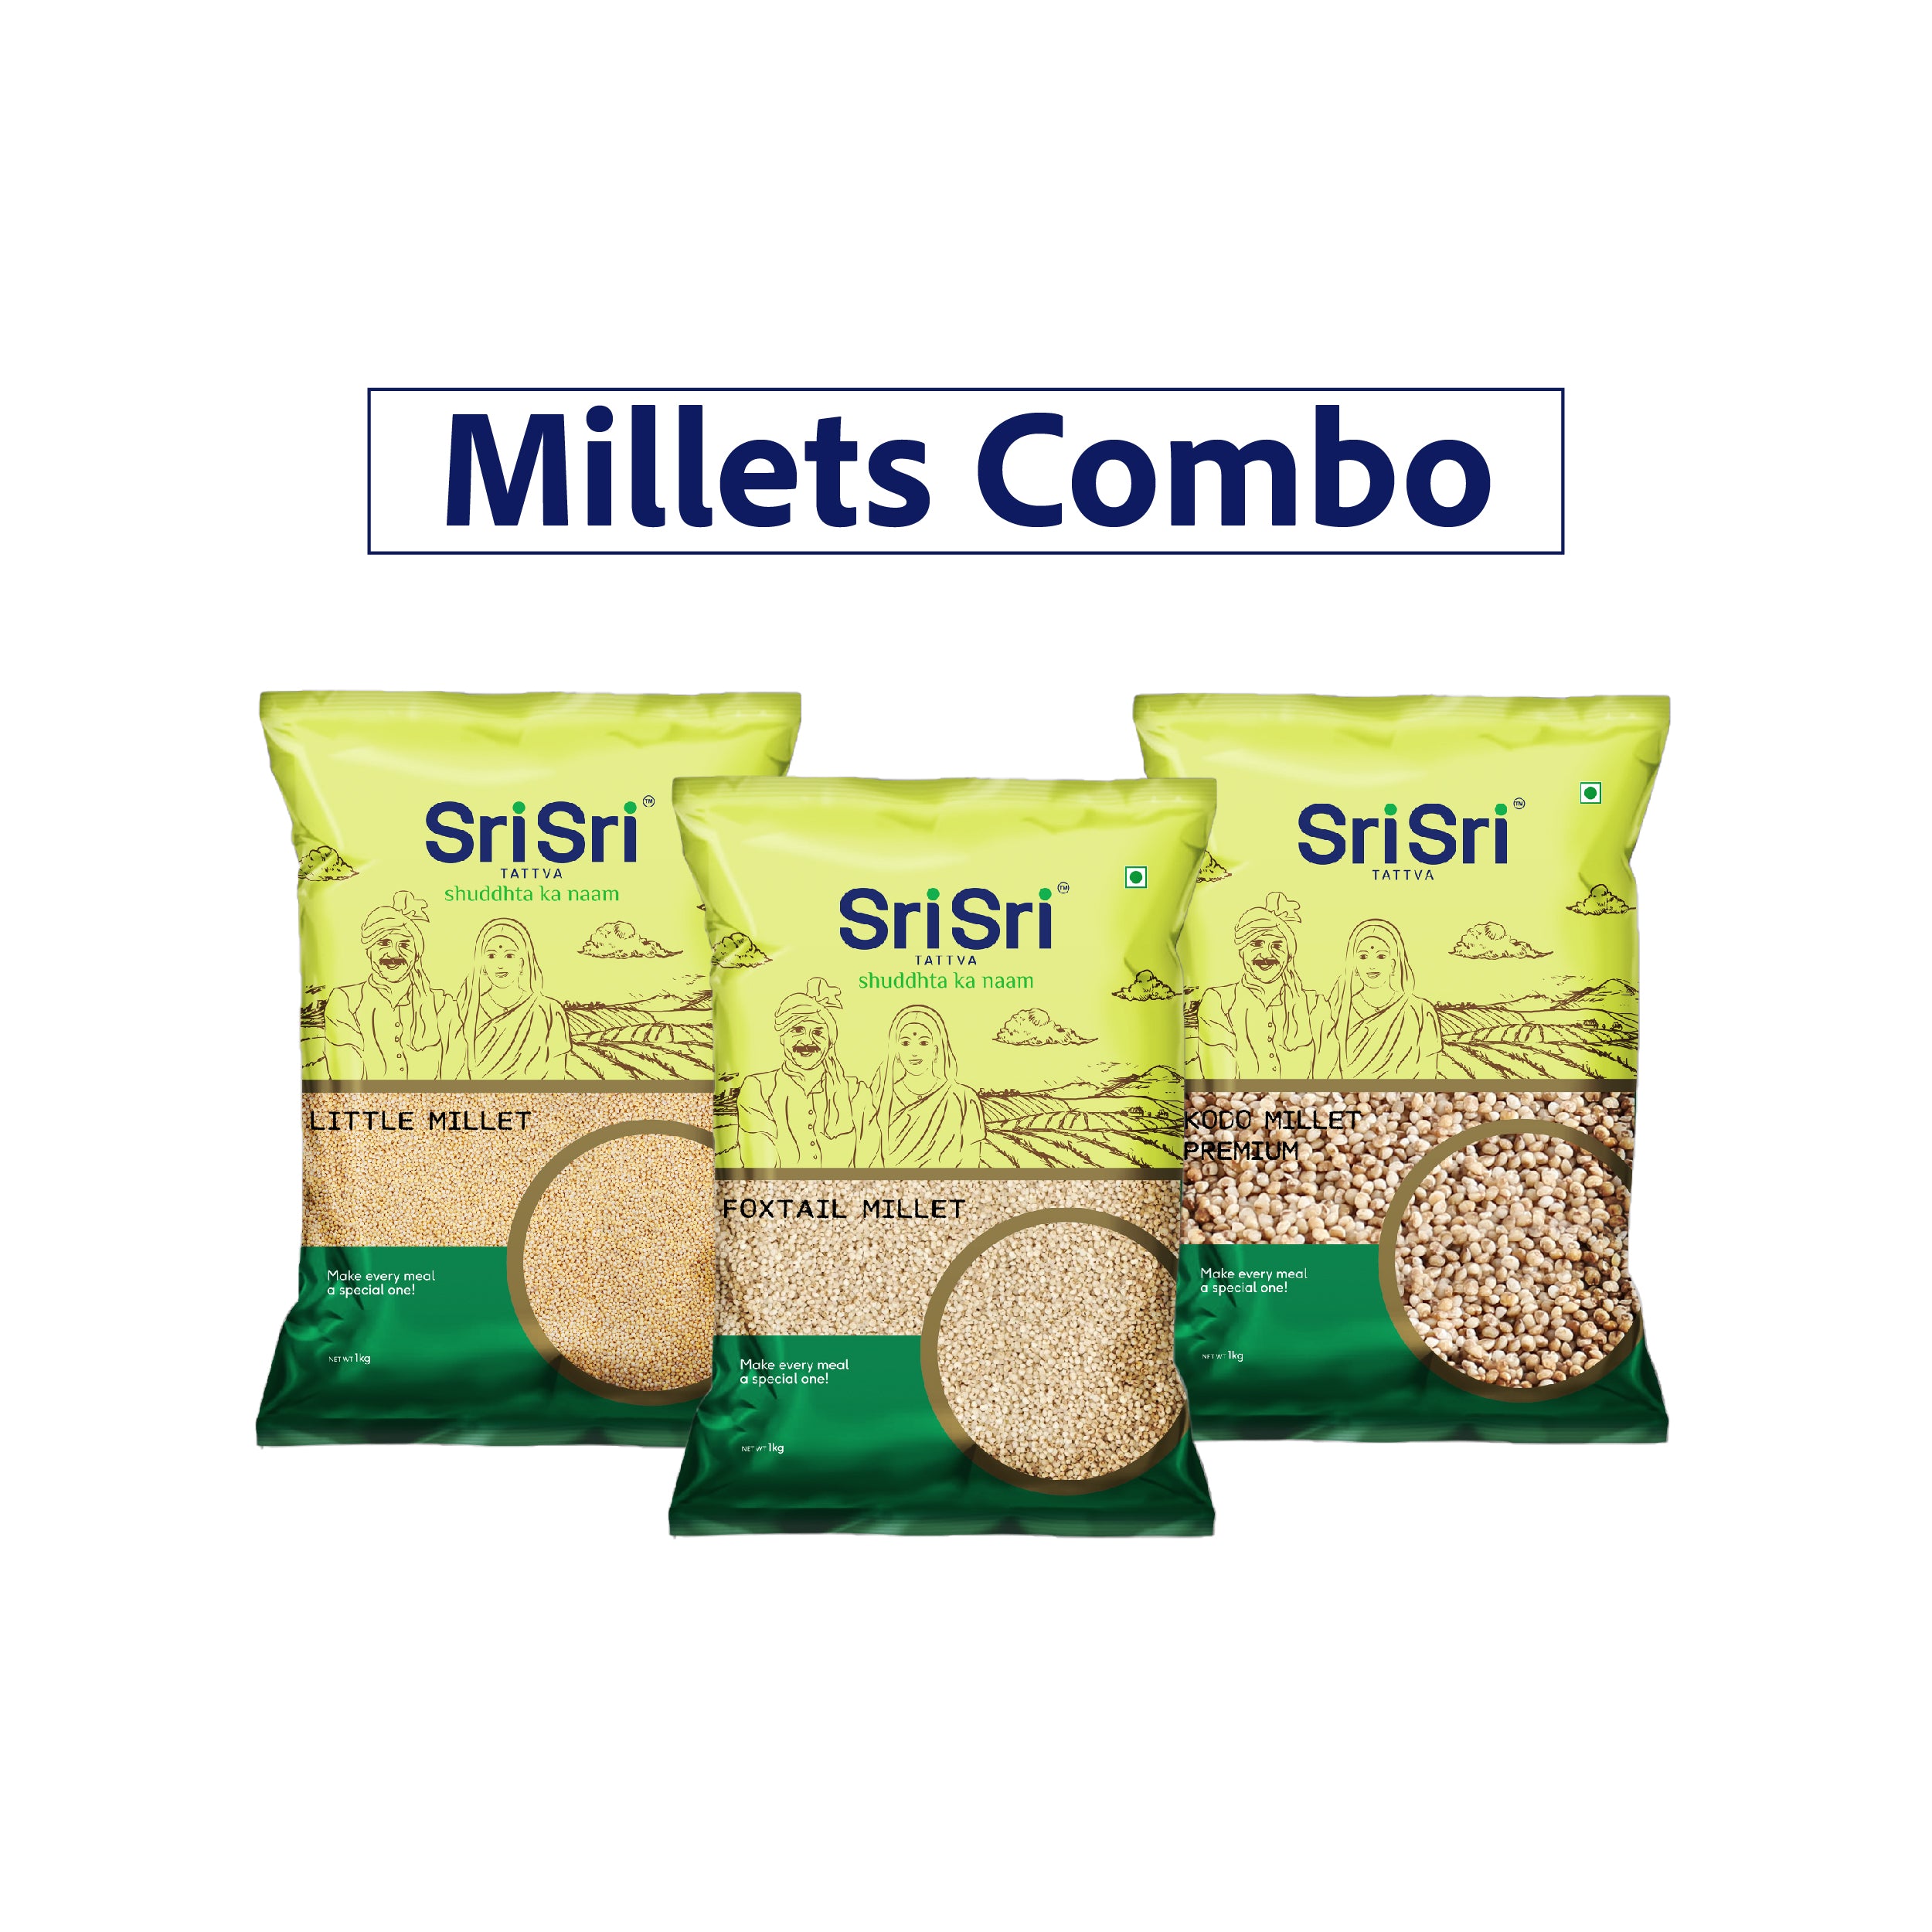 Millets Combo | Little Millet, Foxtail Millet Premium, Kodo Millet Premium | 1 kg Each